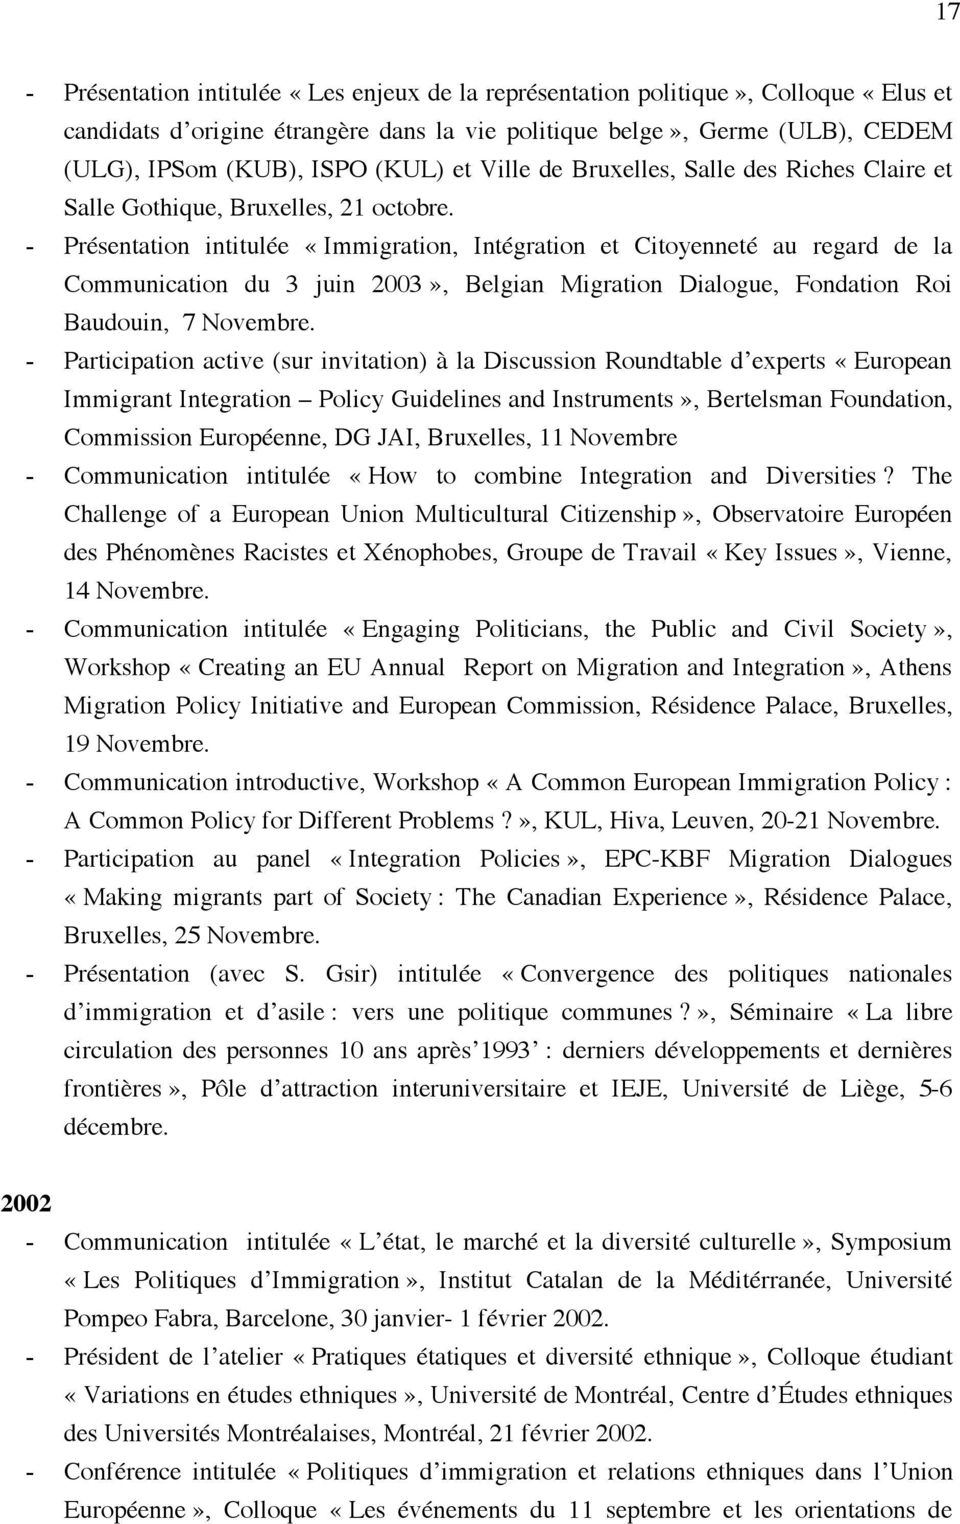 - Présentation intitulée «Immigration, Intégration et Citoyenneté au regard de la Communication du 3 juin 2003», Belgian Migration Dialogue, Fondation Roi Baudouin, 7 Novembre.